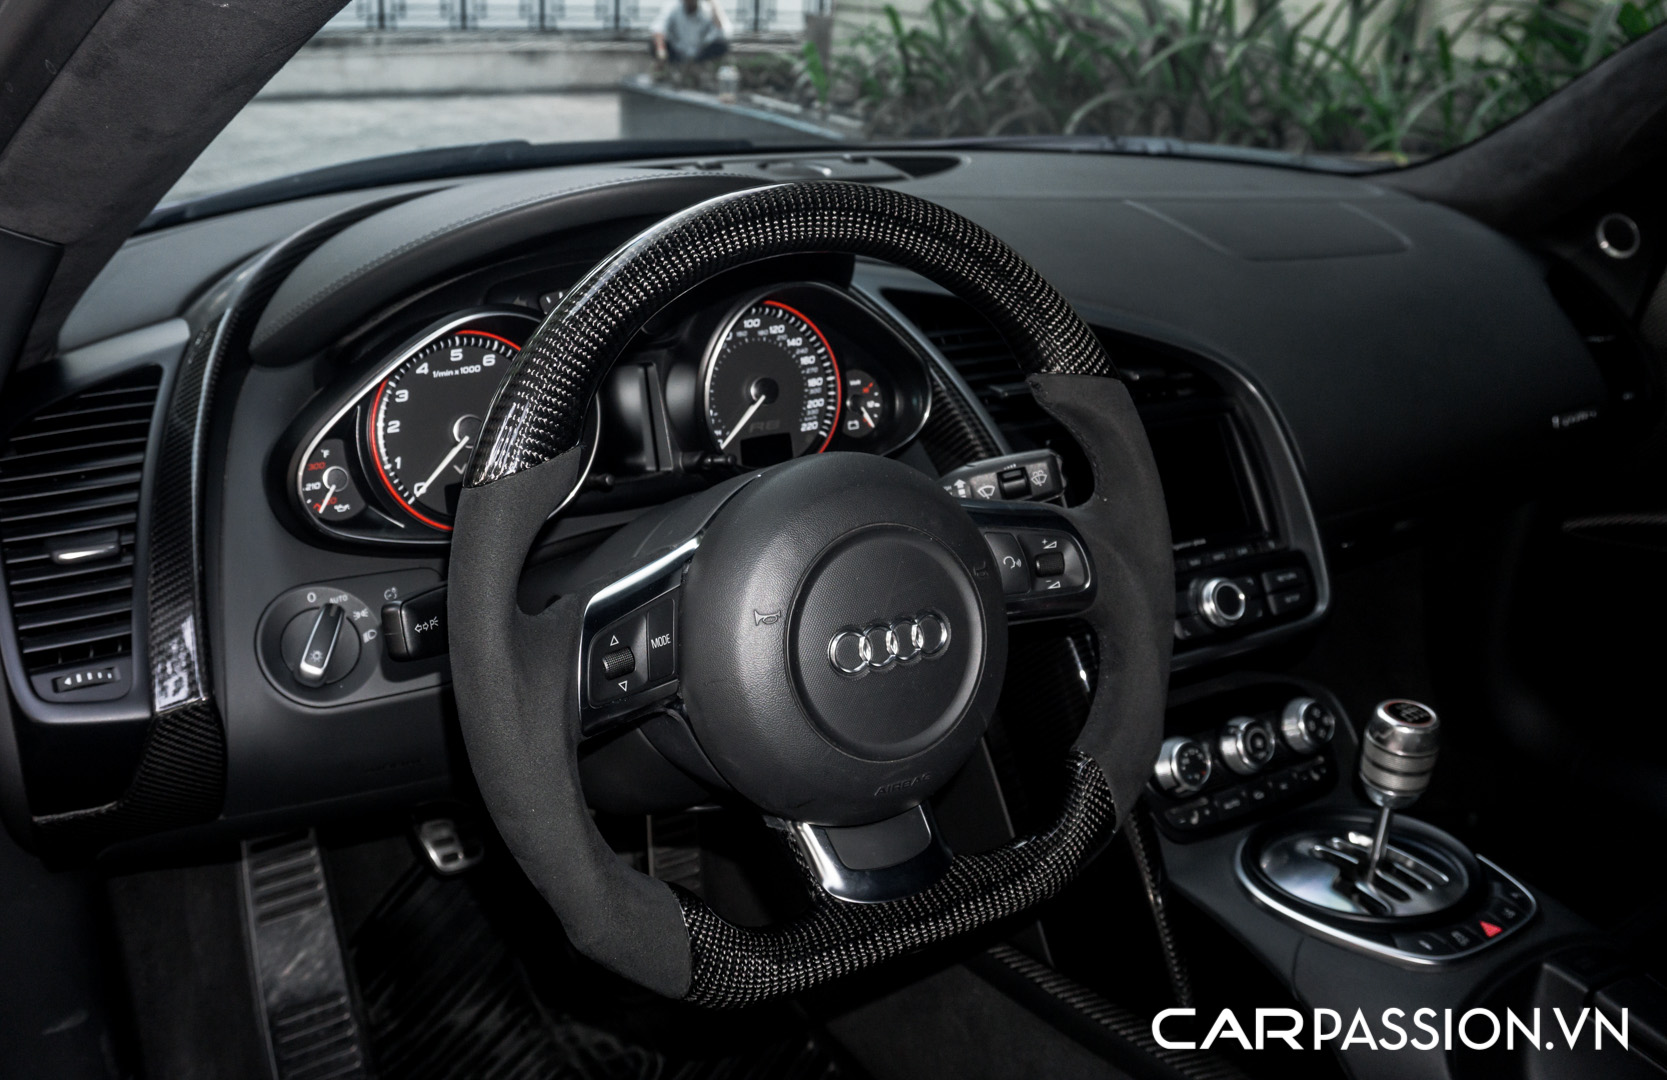 CP-Audi R8 V10 số sàn độ khủng (30).jpg